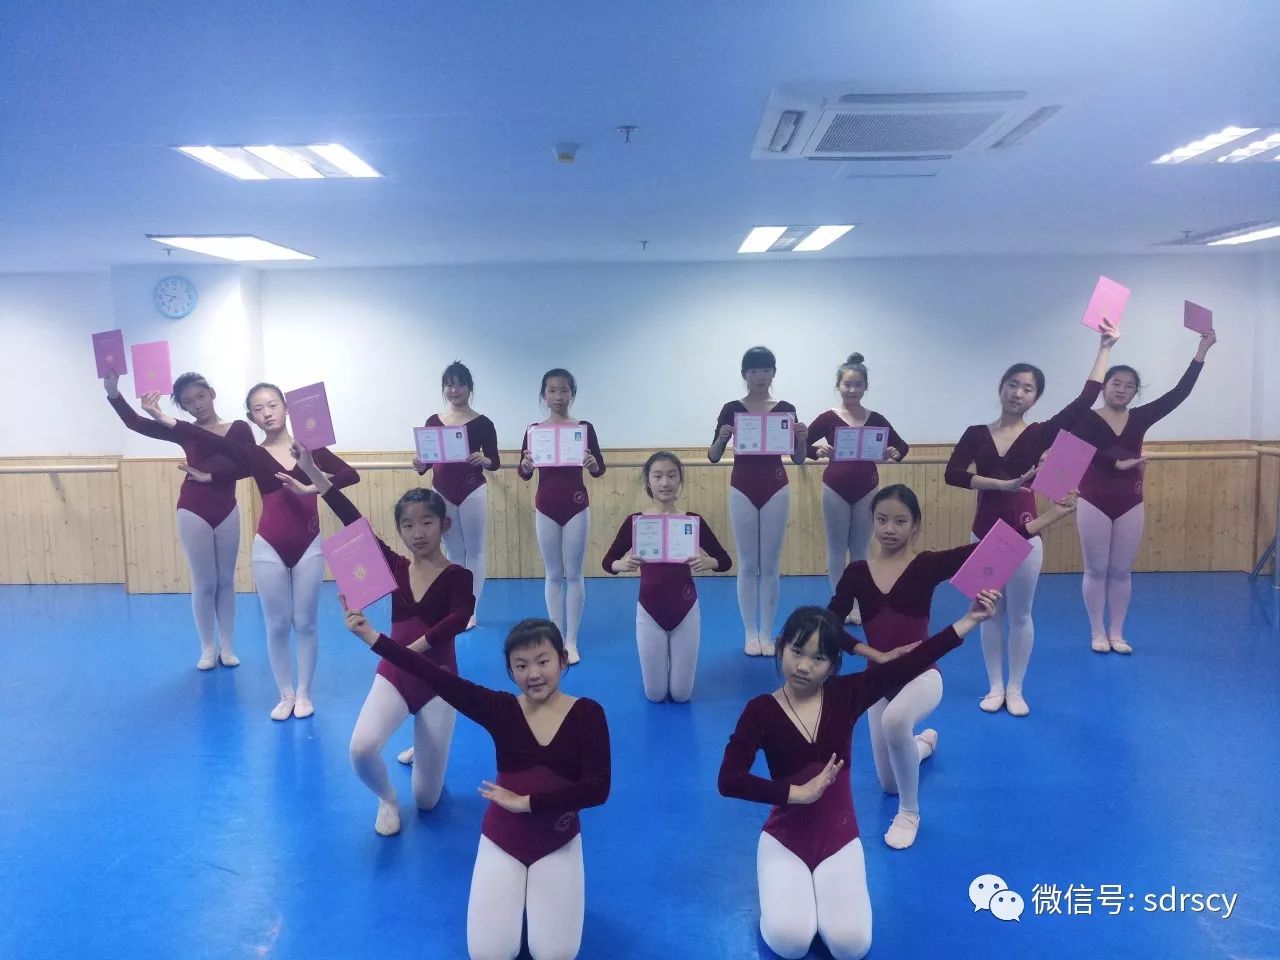 【润笙动态】走进春芽舞蹈课堂——北京舞蹈学院中国舞考级证书光荣